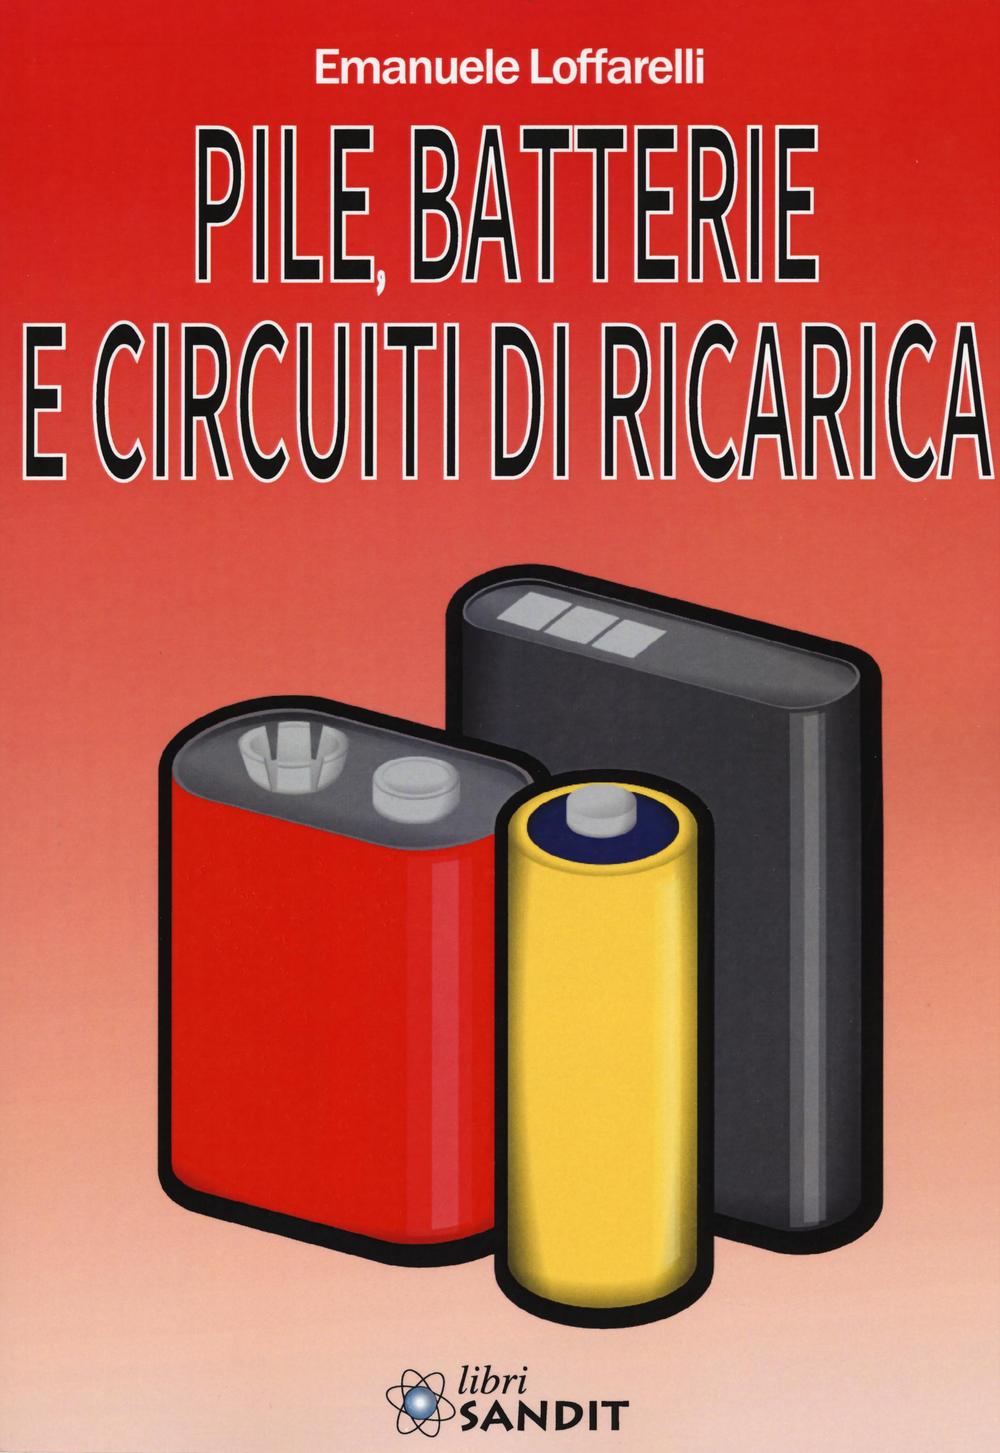 Kniha Pile, batterie e circuiti di ricarica Emanuele Loffarelli